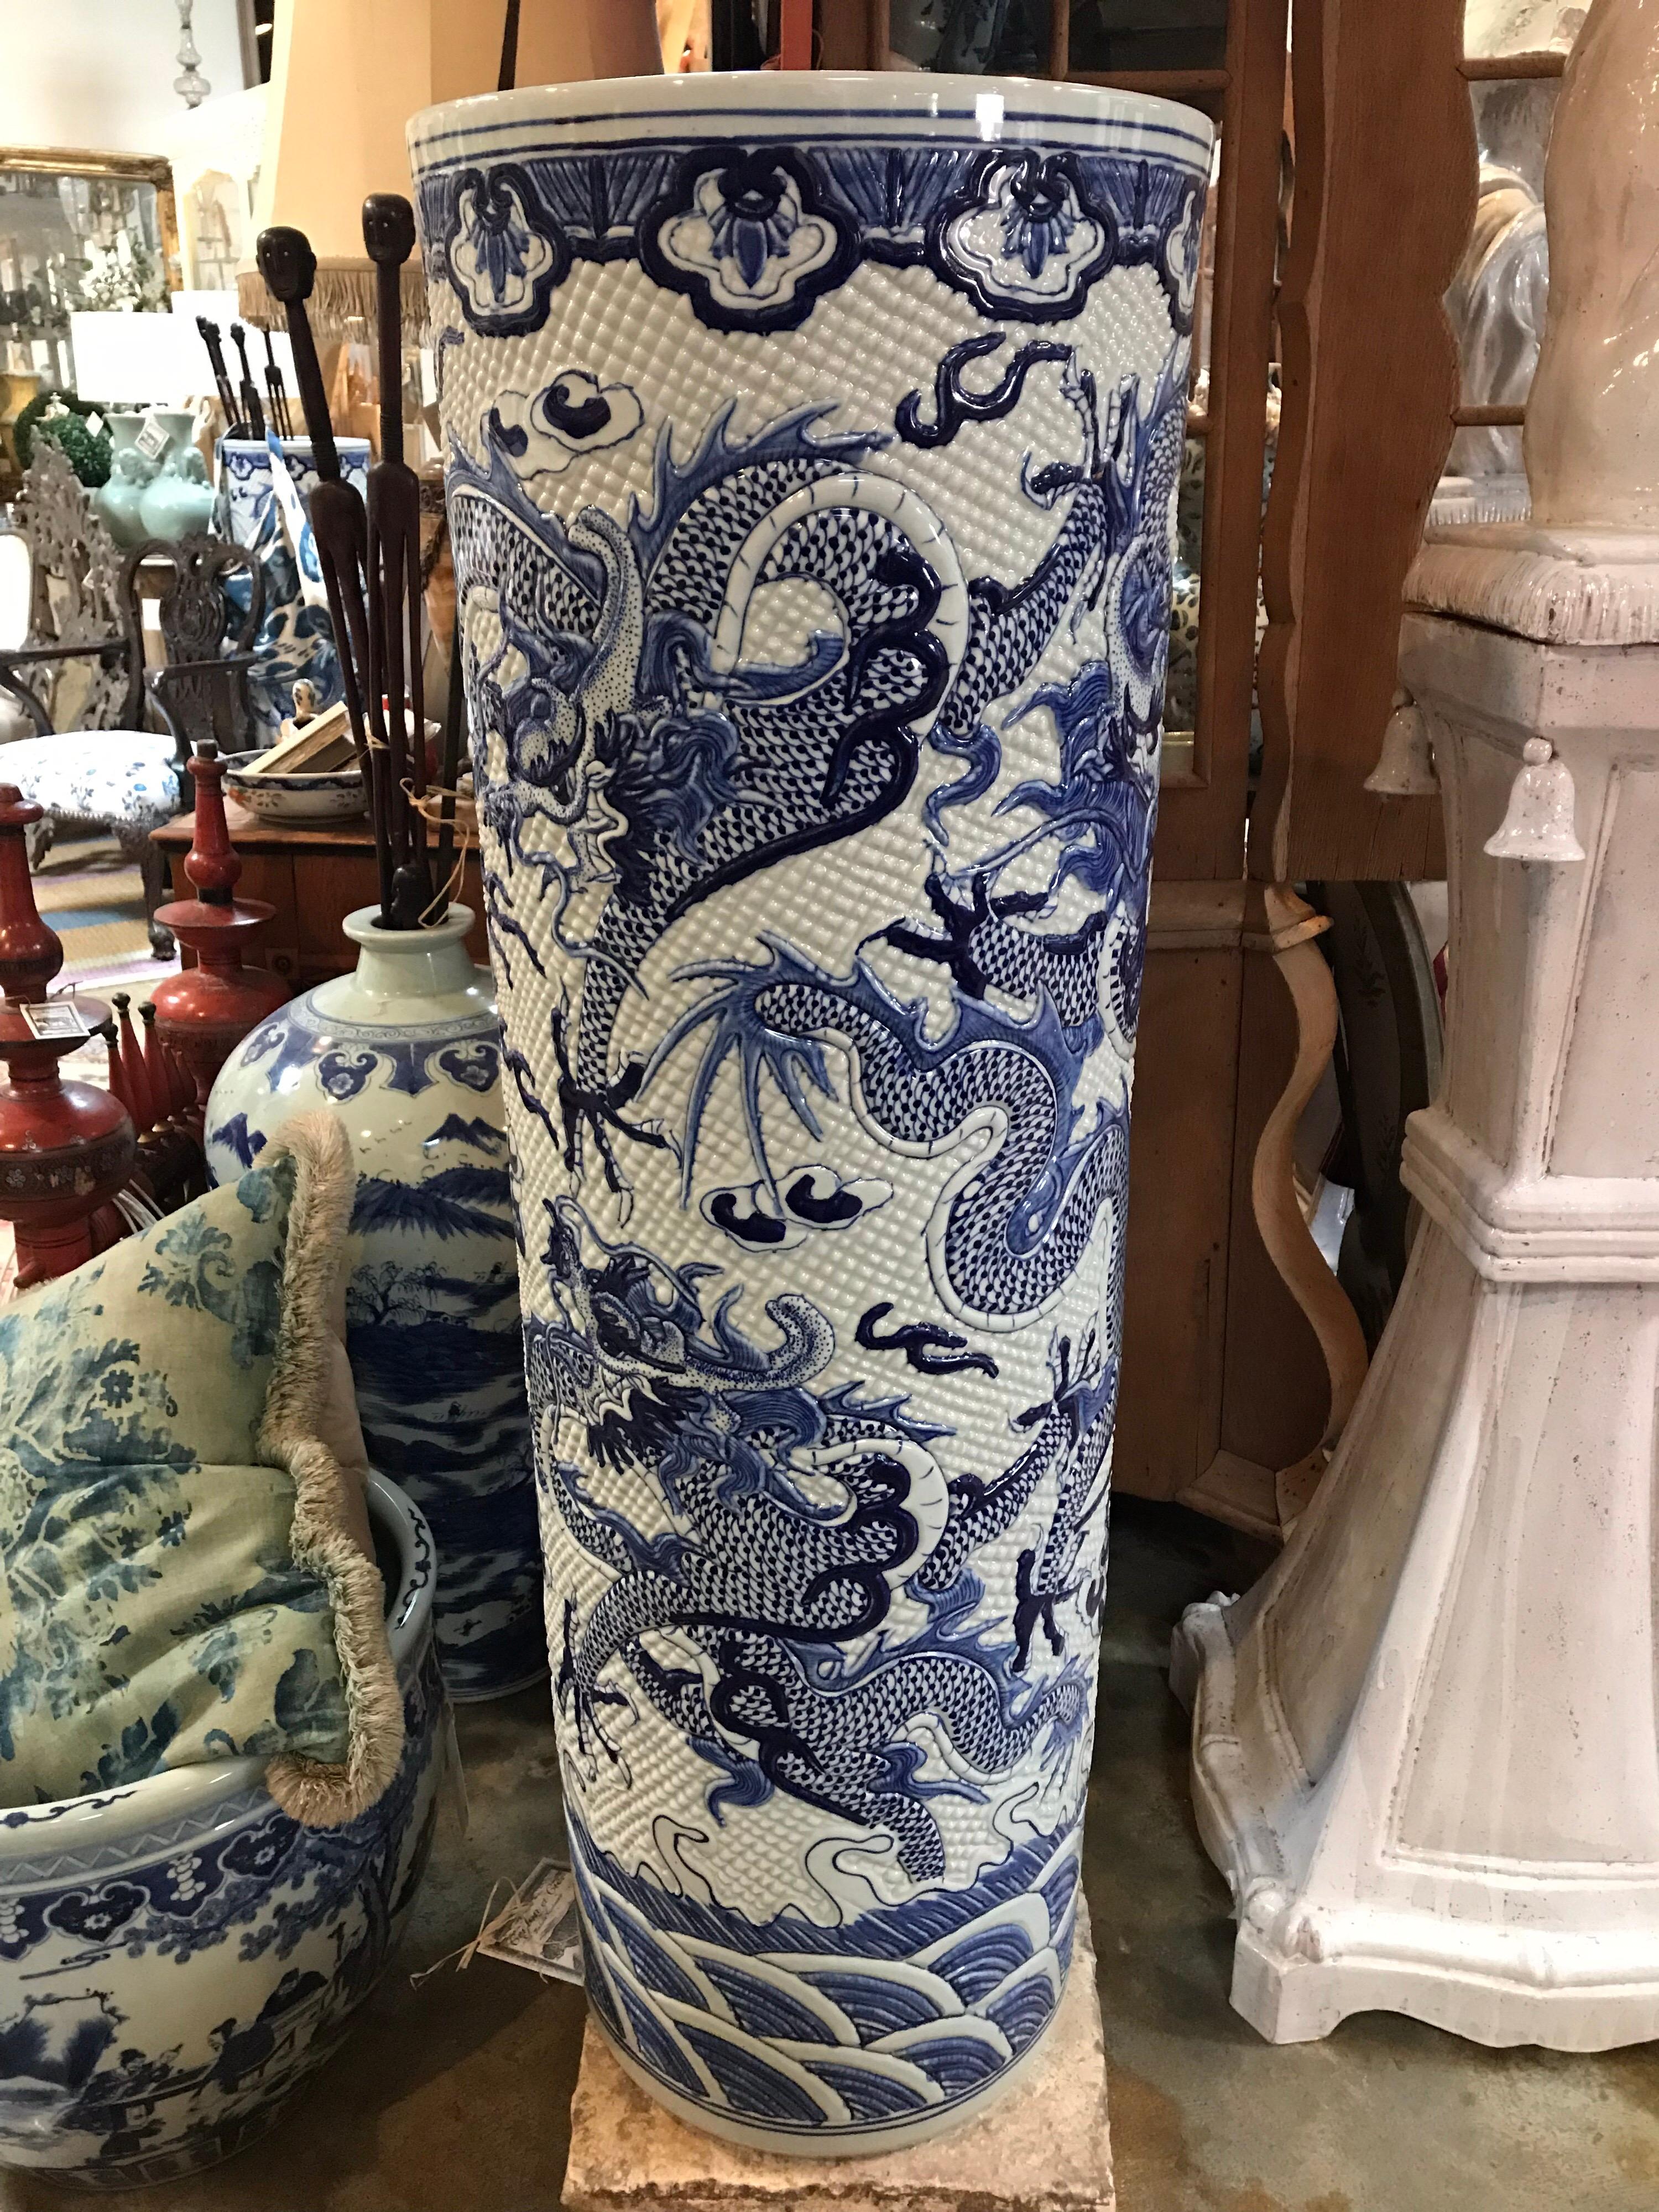 Paire de vases cylindriques chinois surdimensionnés. Des pots en céramique magnifiquement détaillés avec des dragons bleus et blancs. Surface texturée. Surdimensionné pour l'importance visuelle.